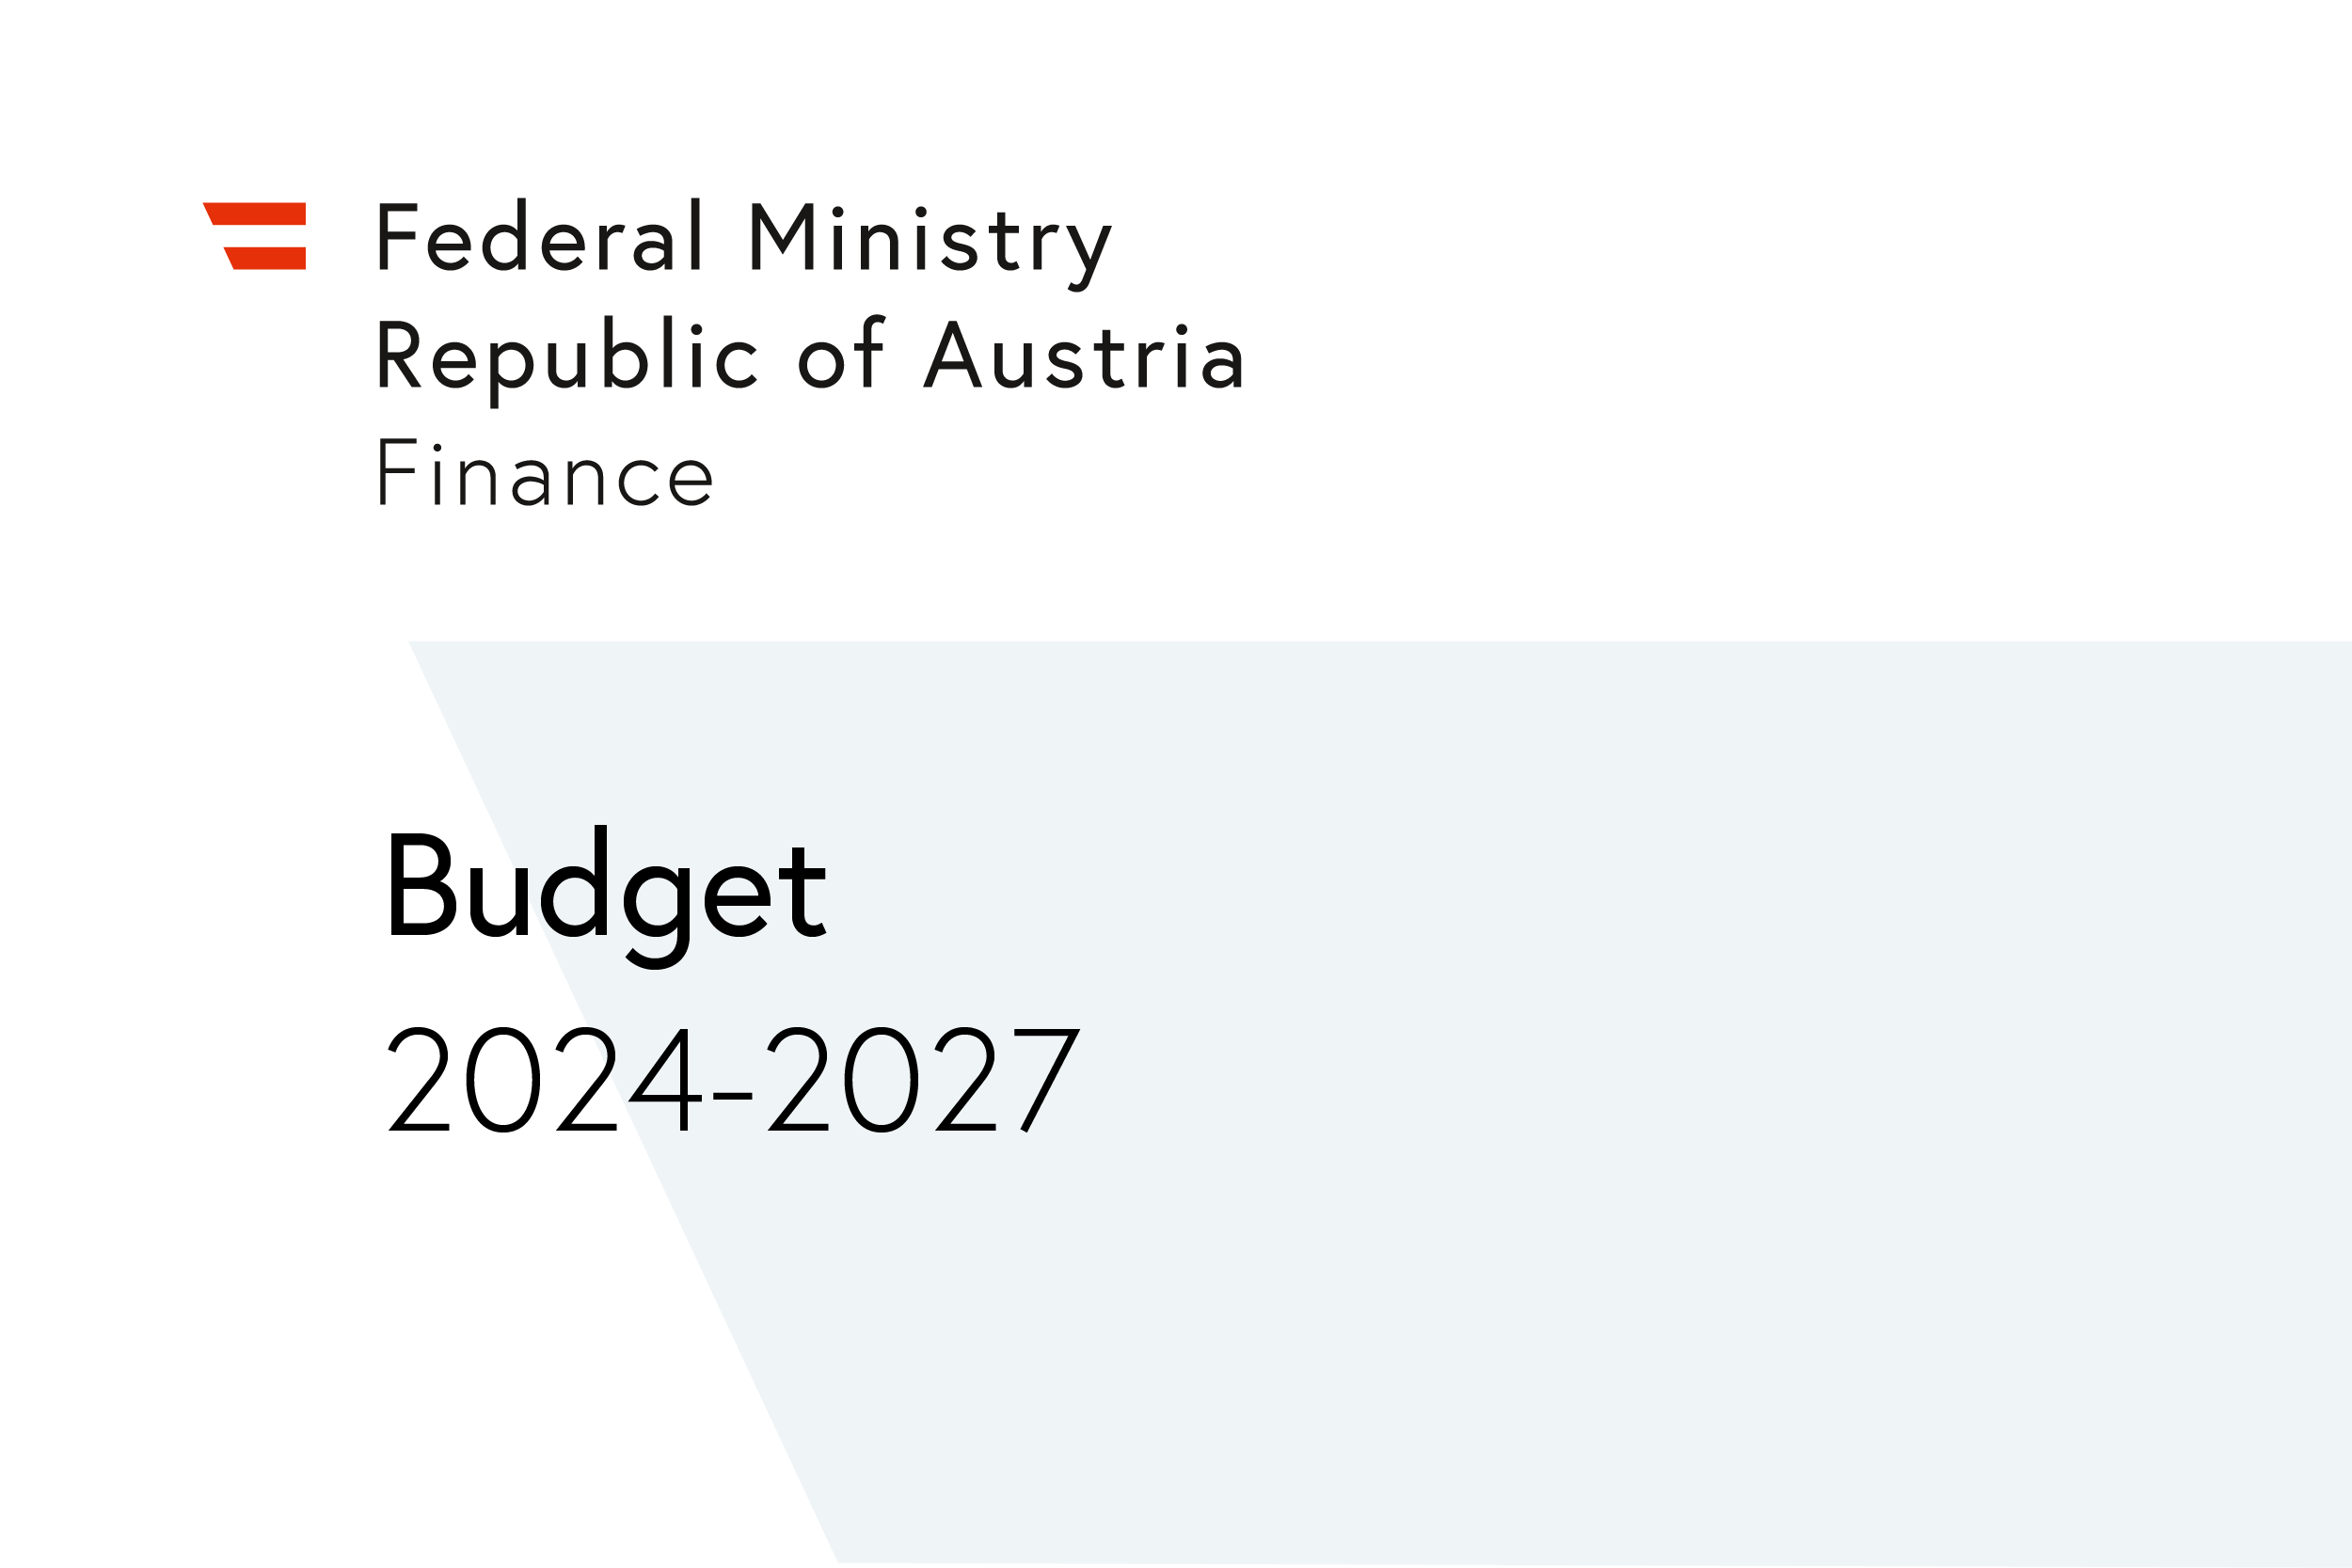 Report_logo_budget_2024-2027